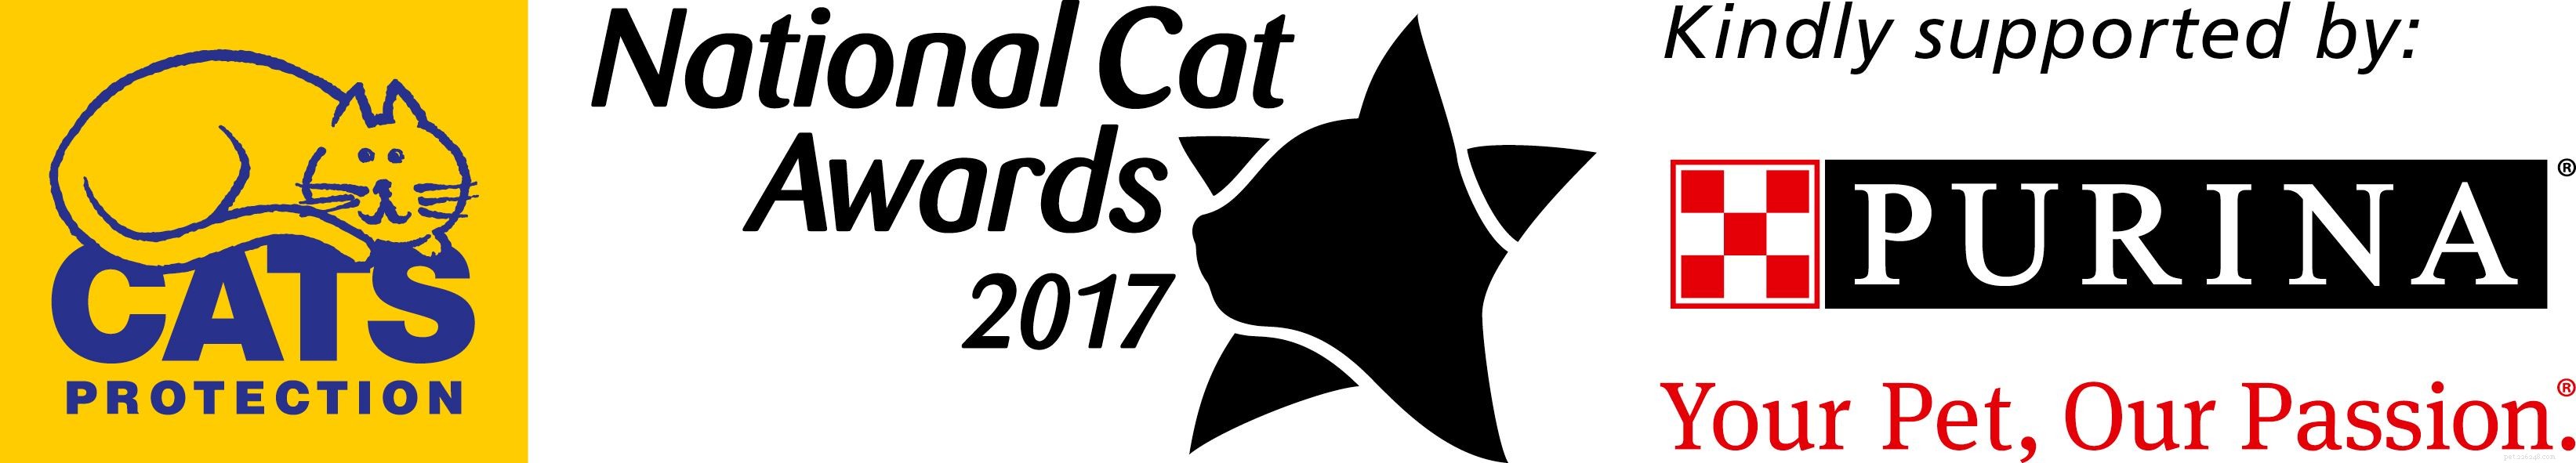 Ontmoet de finalisten van de categorie Furr-ever Friends in de National Cat Awards 2017!